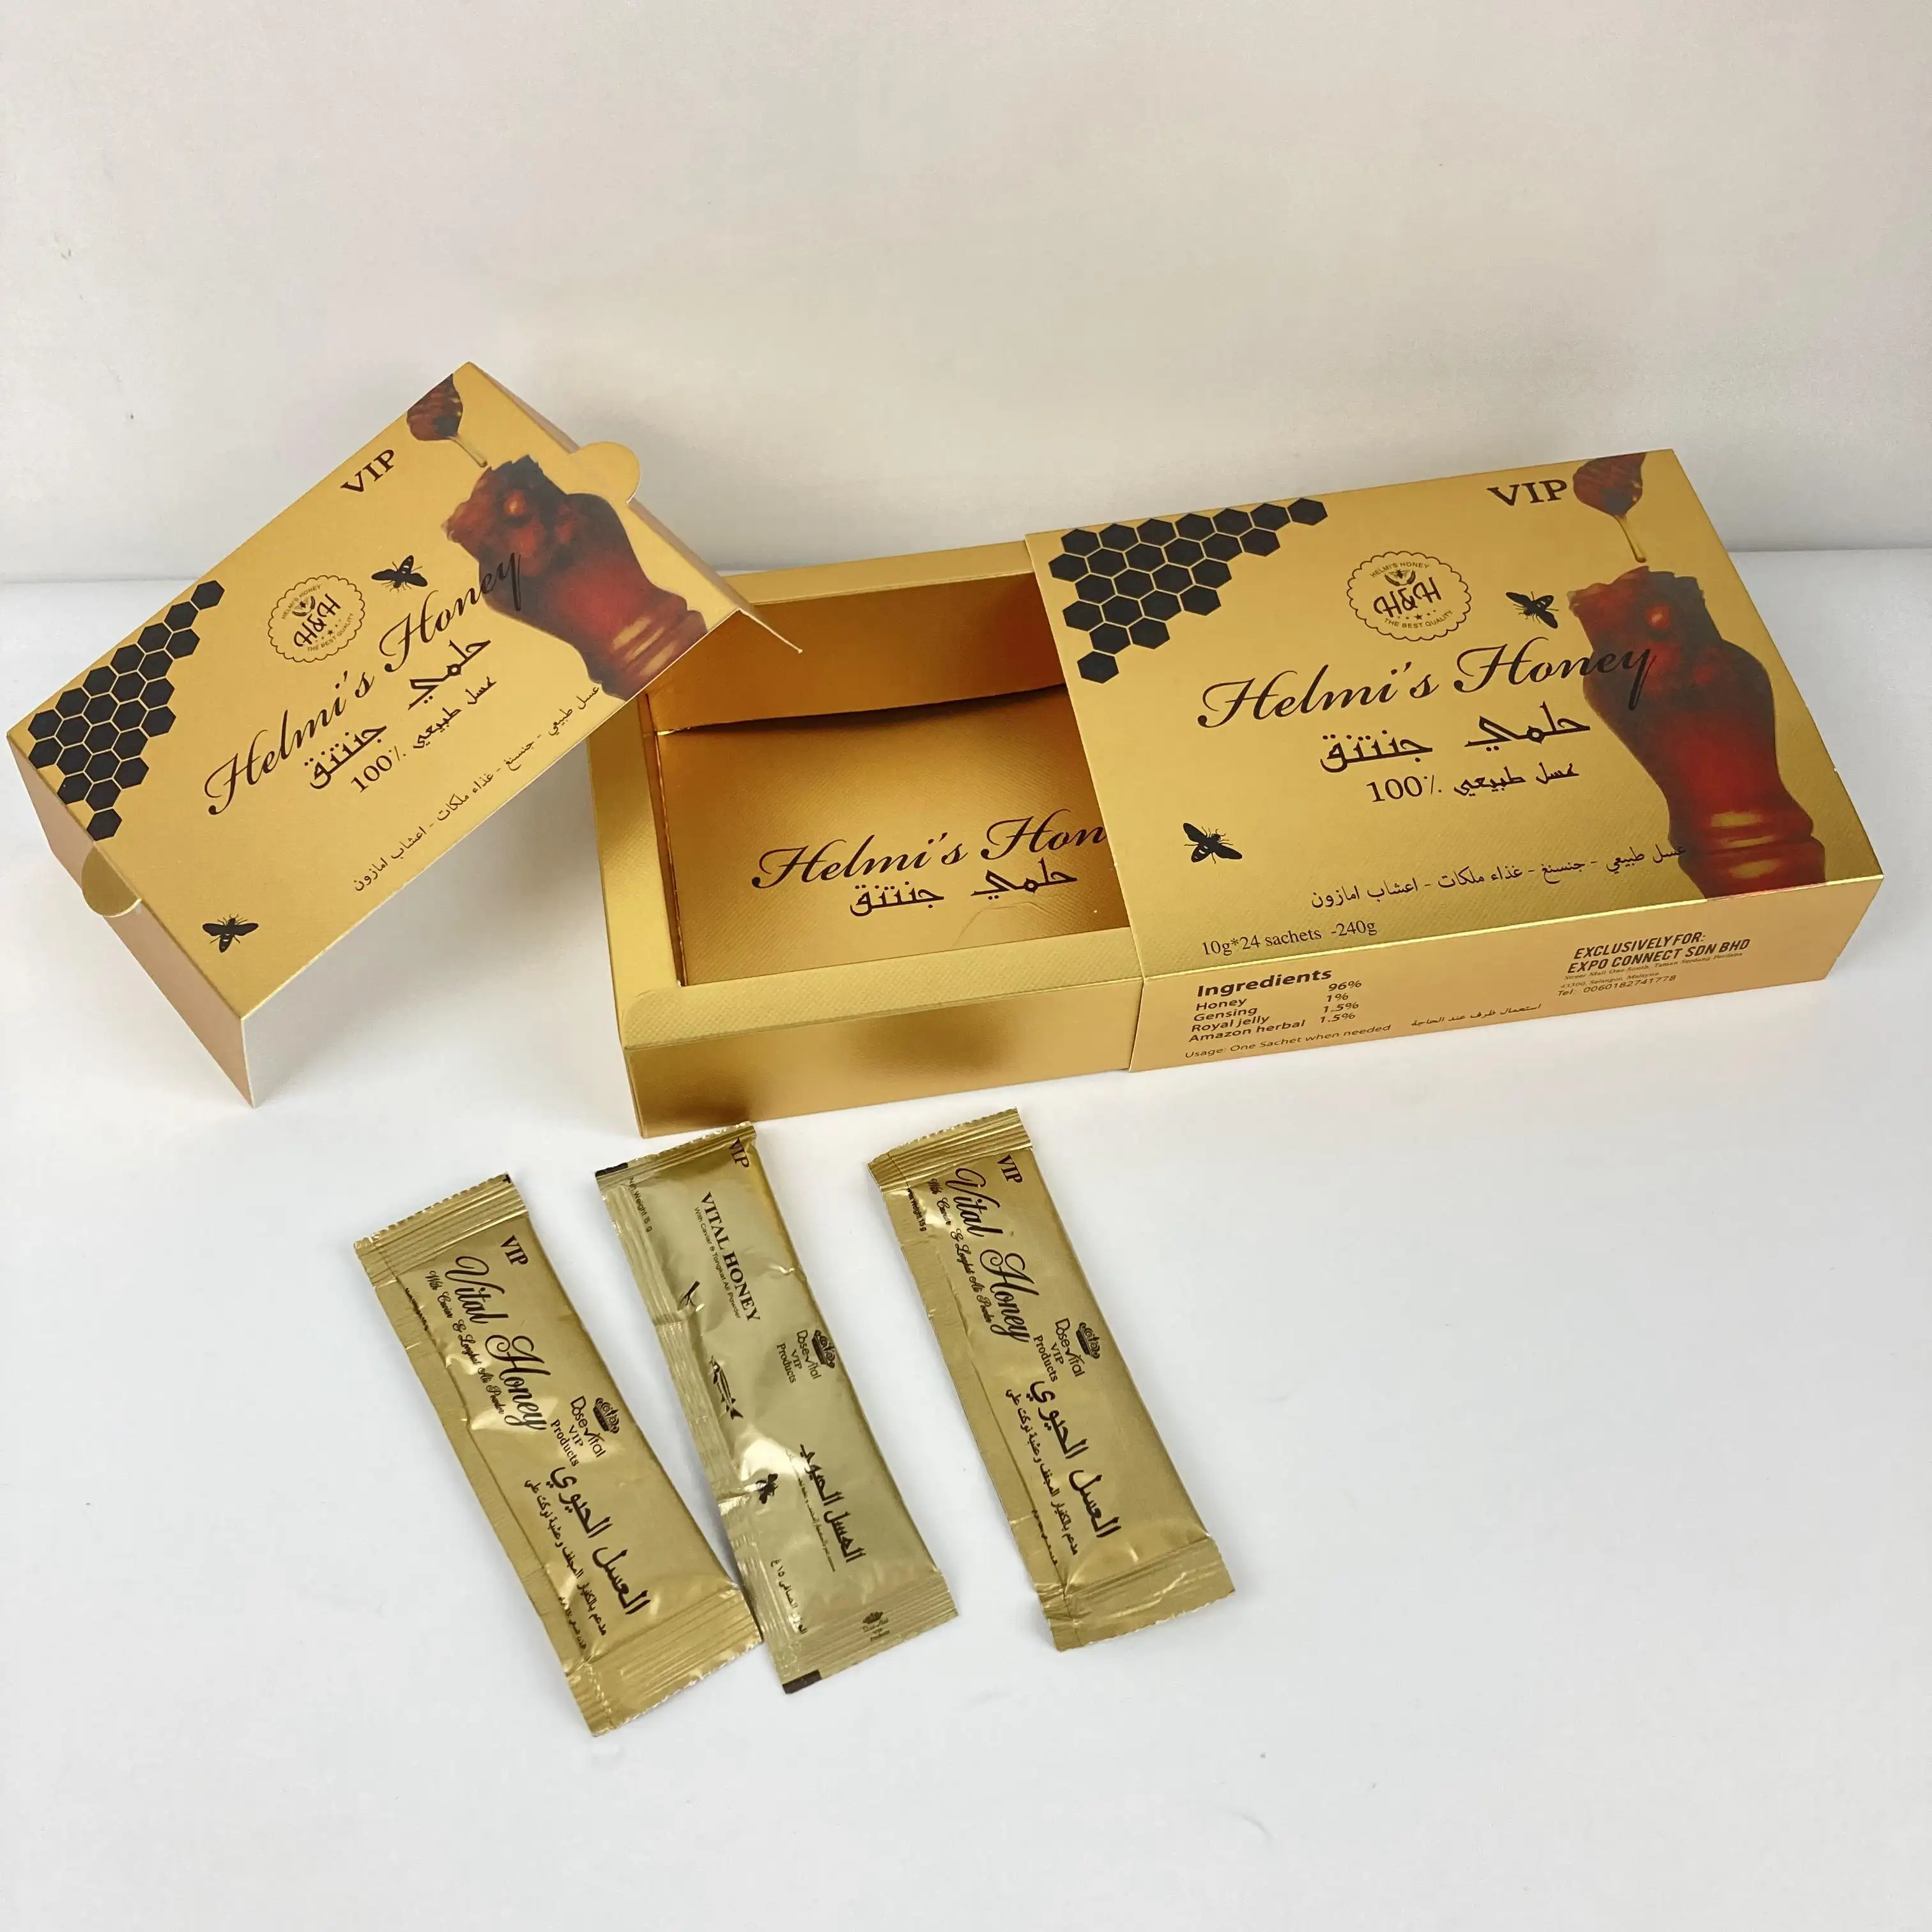 Bolsitas de embalaje de miel Vip, Impresión de oro personalizada, flores, HMF, miel real Vip para él Vital, embalaje de miel Vip